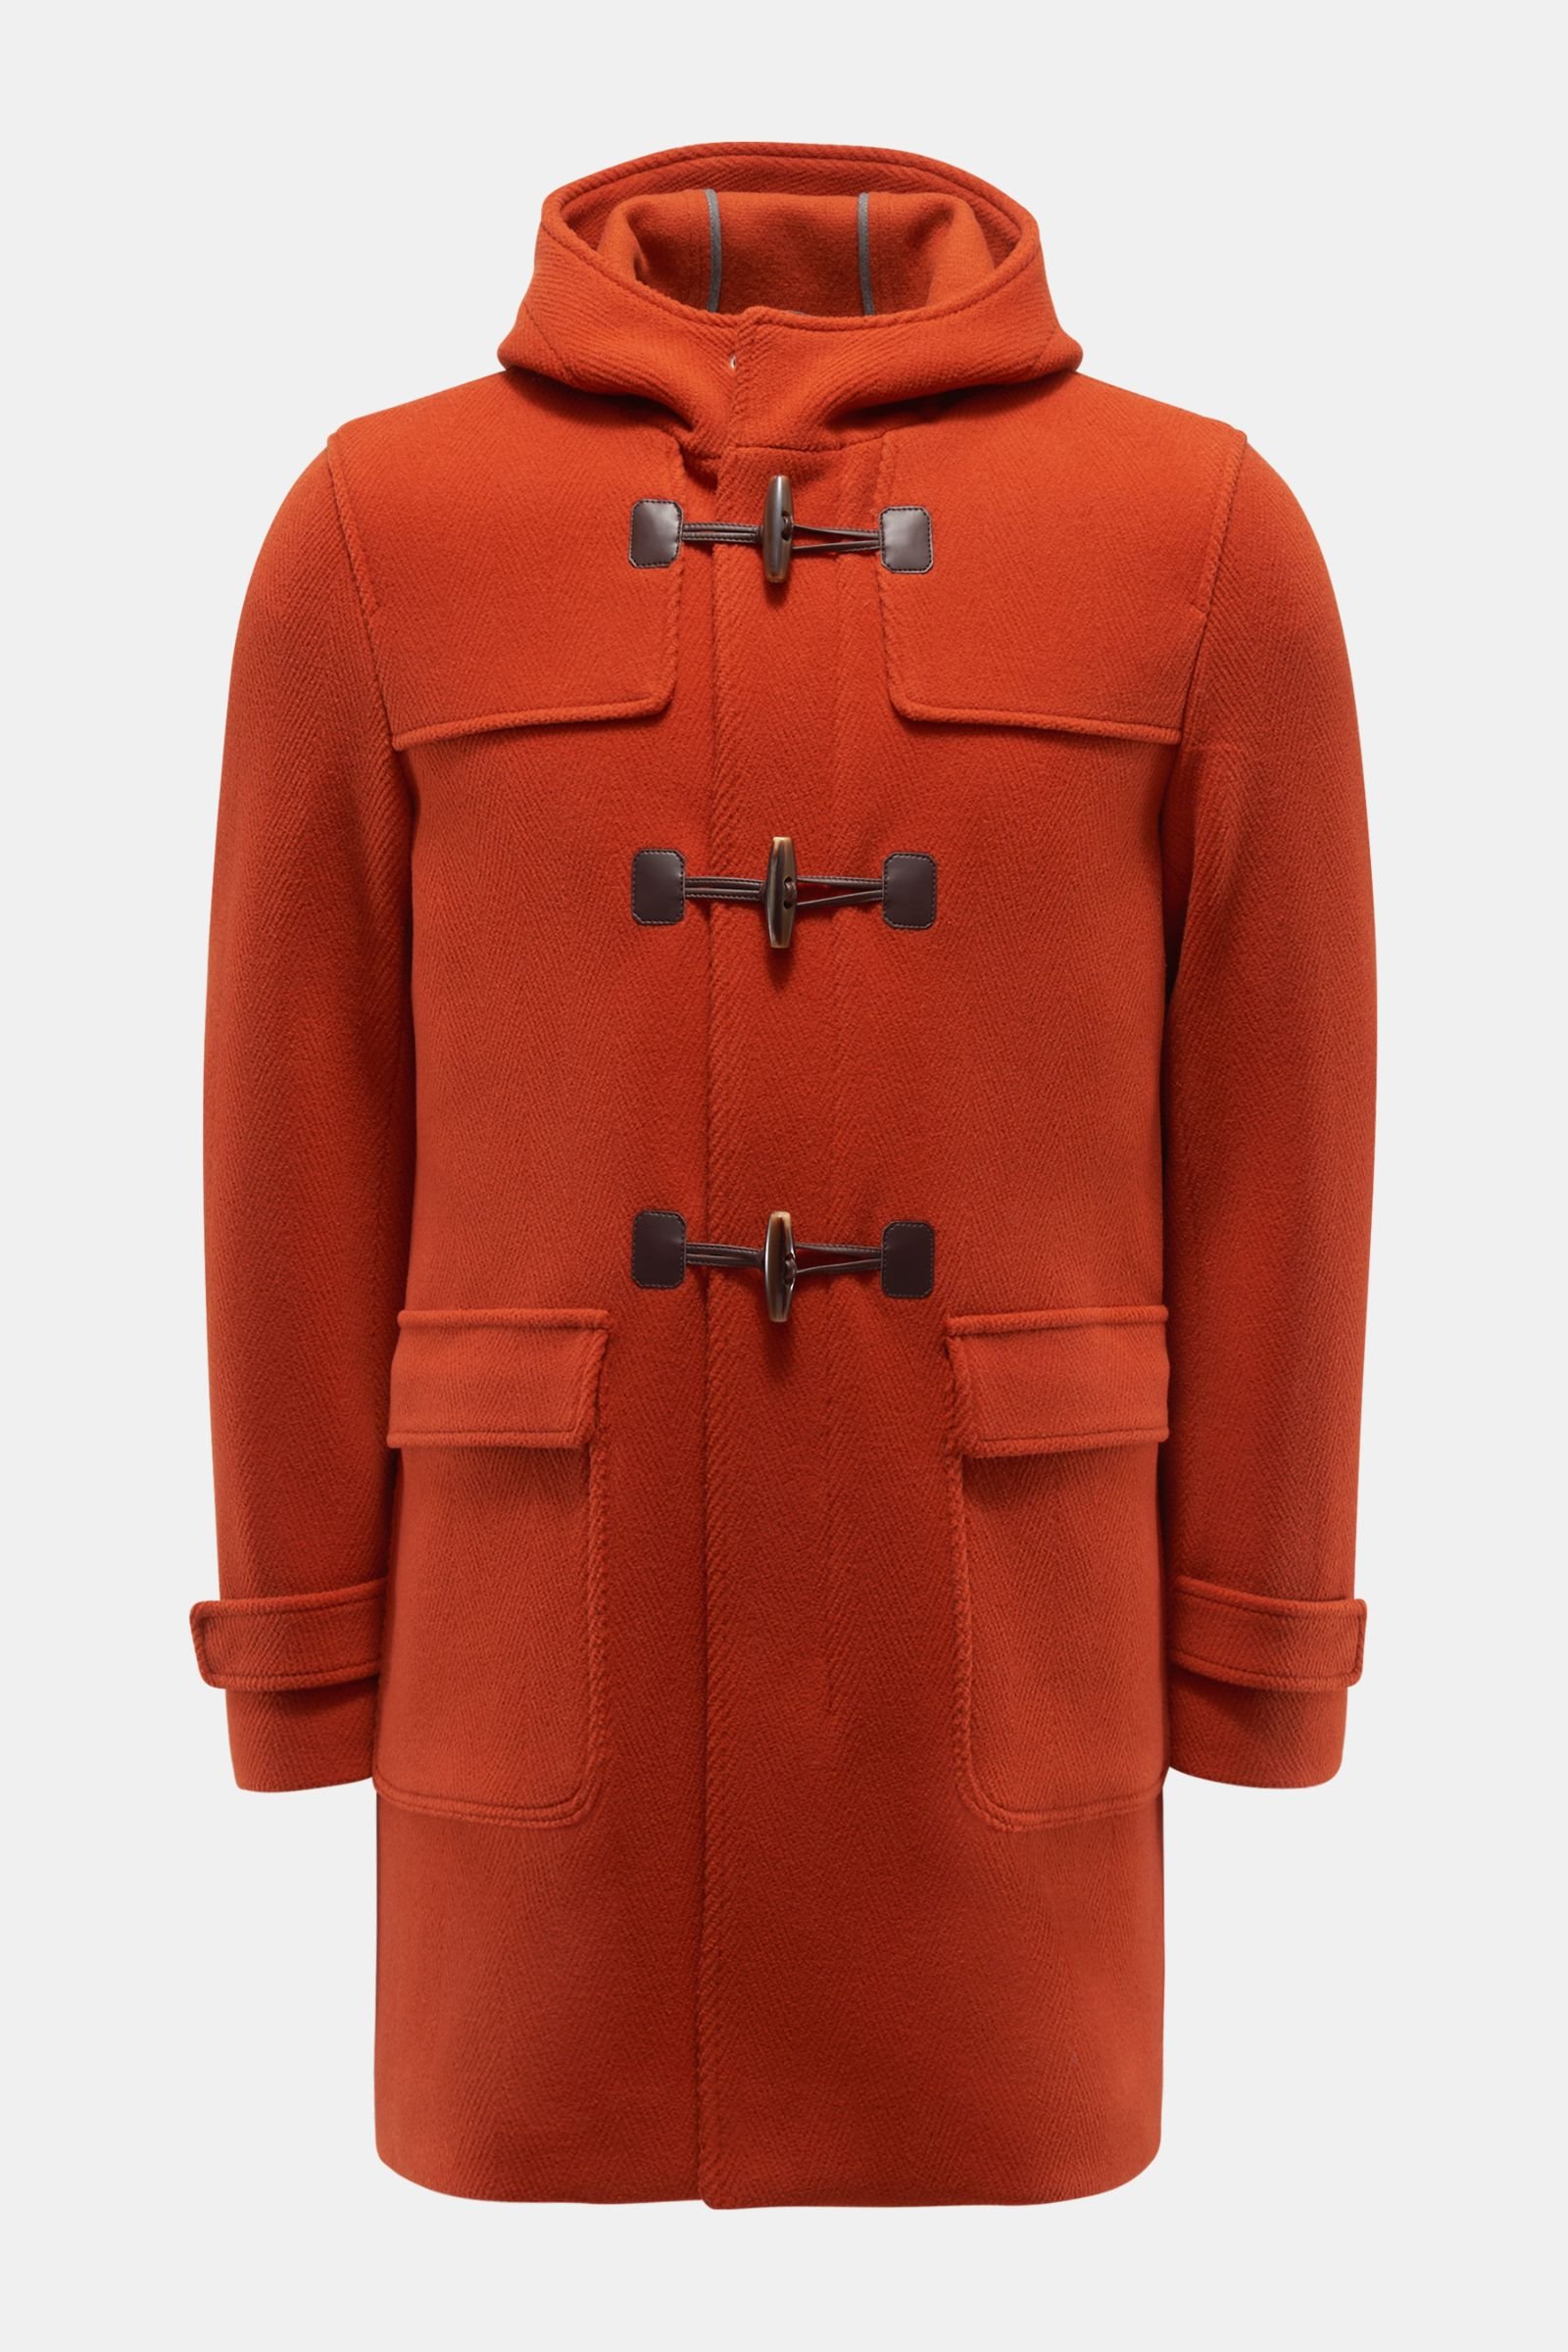 Duffle coat orange